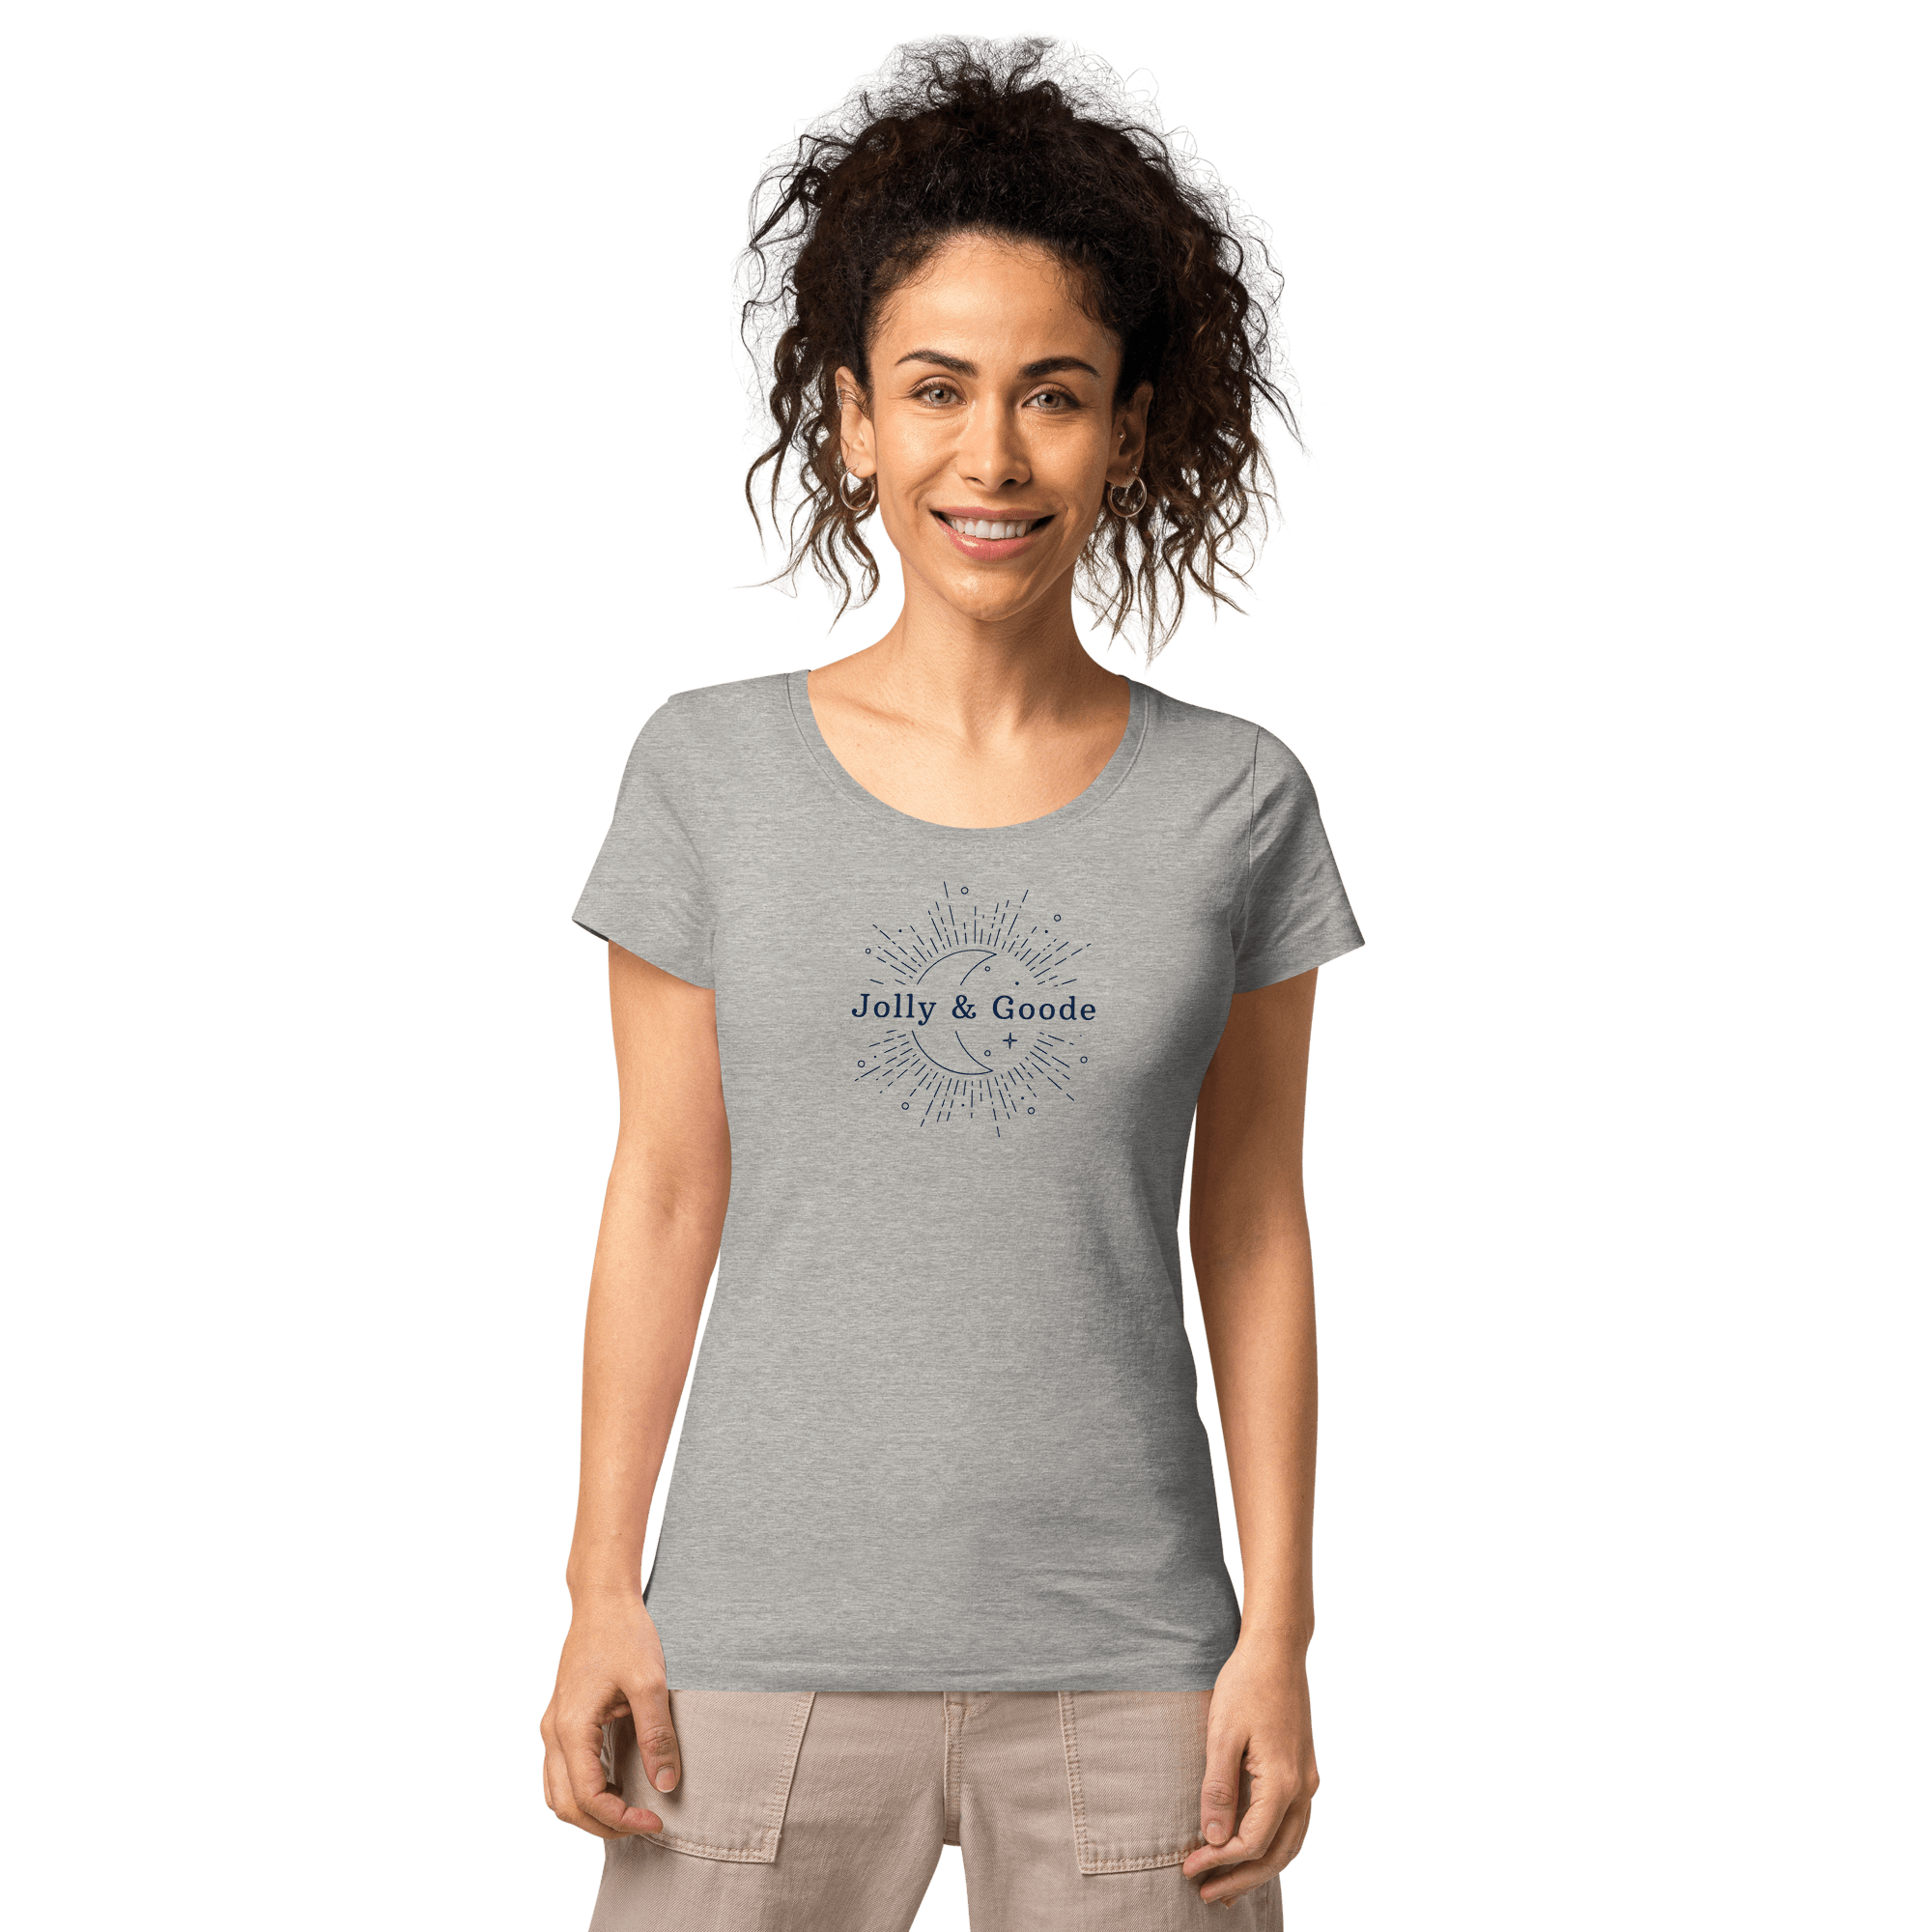 Jolly & Goode | Women’s Organic T-shirt Grey melange / S Shirts & Tops Jolly & Goode